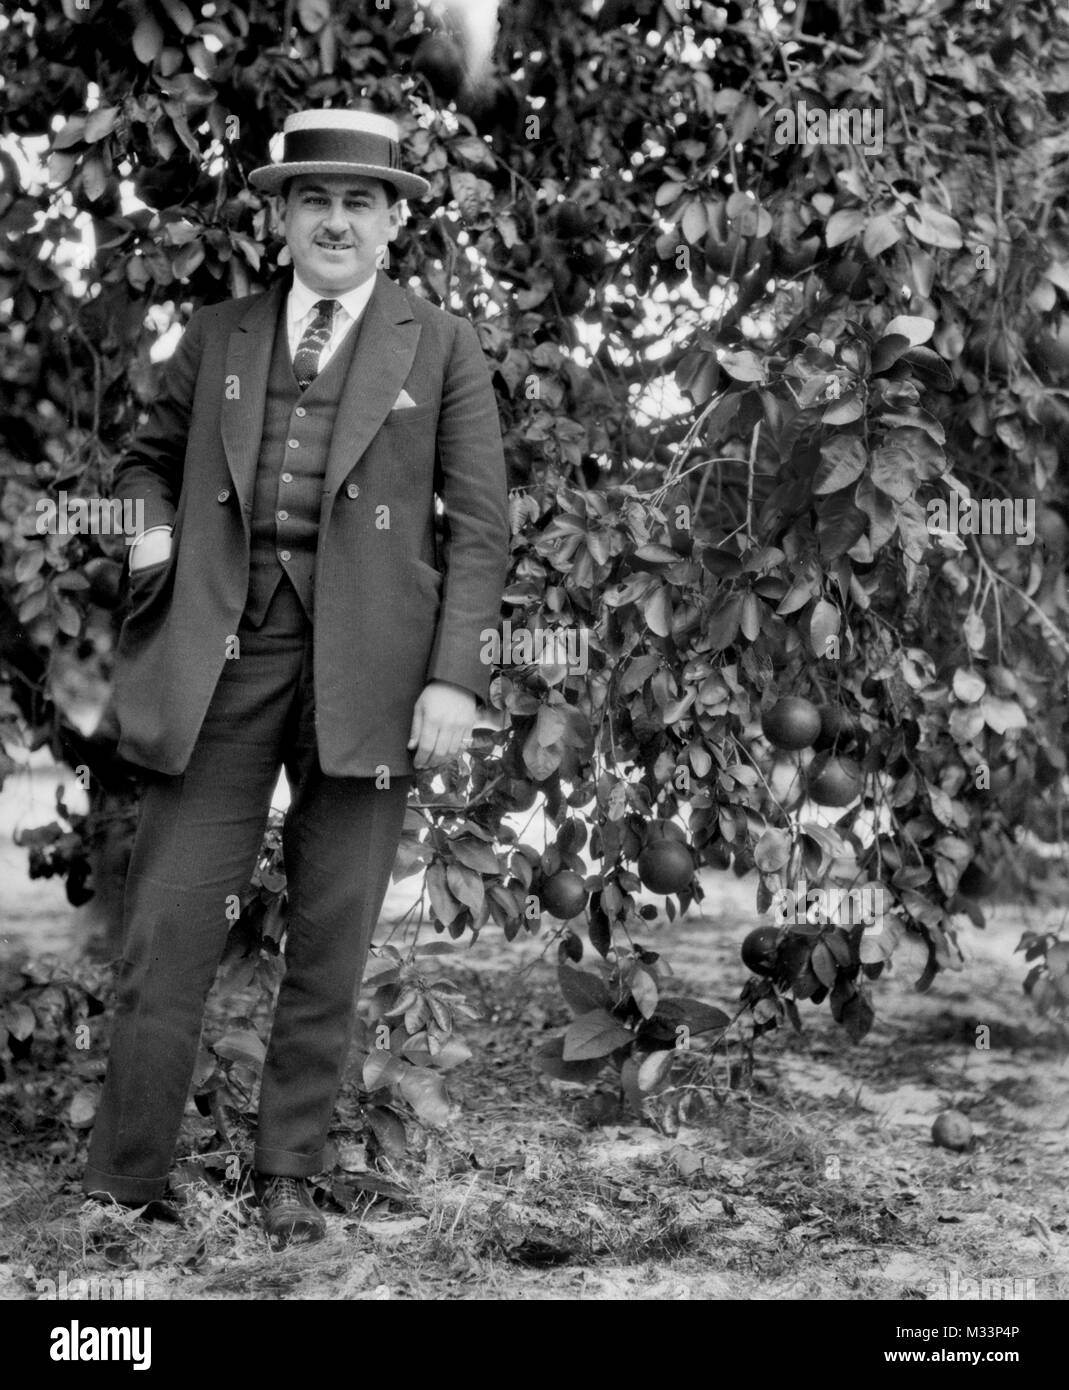 Homme avec un chapeau de paille pose dans une orangeraie, ca. 1920. Banque D'Images